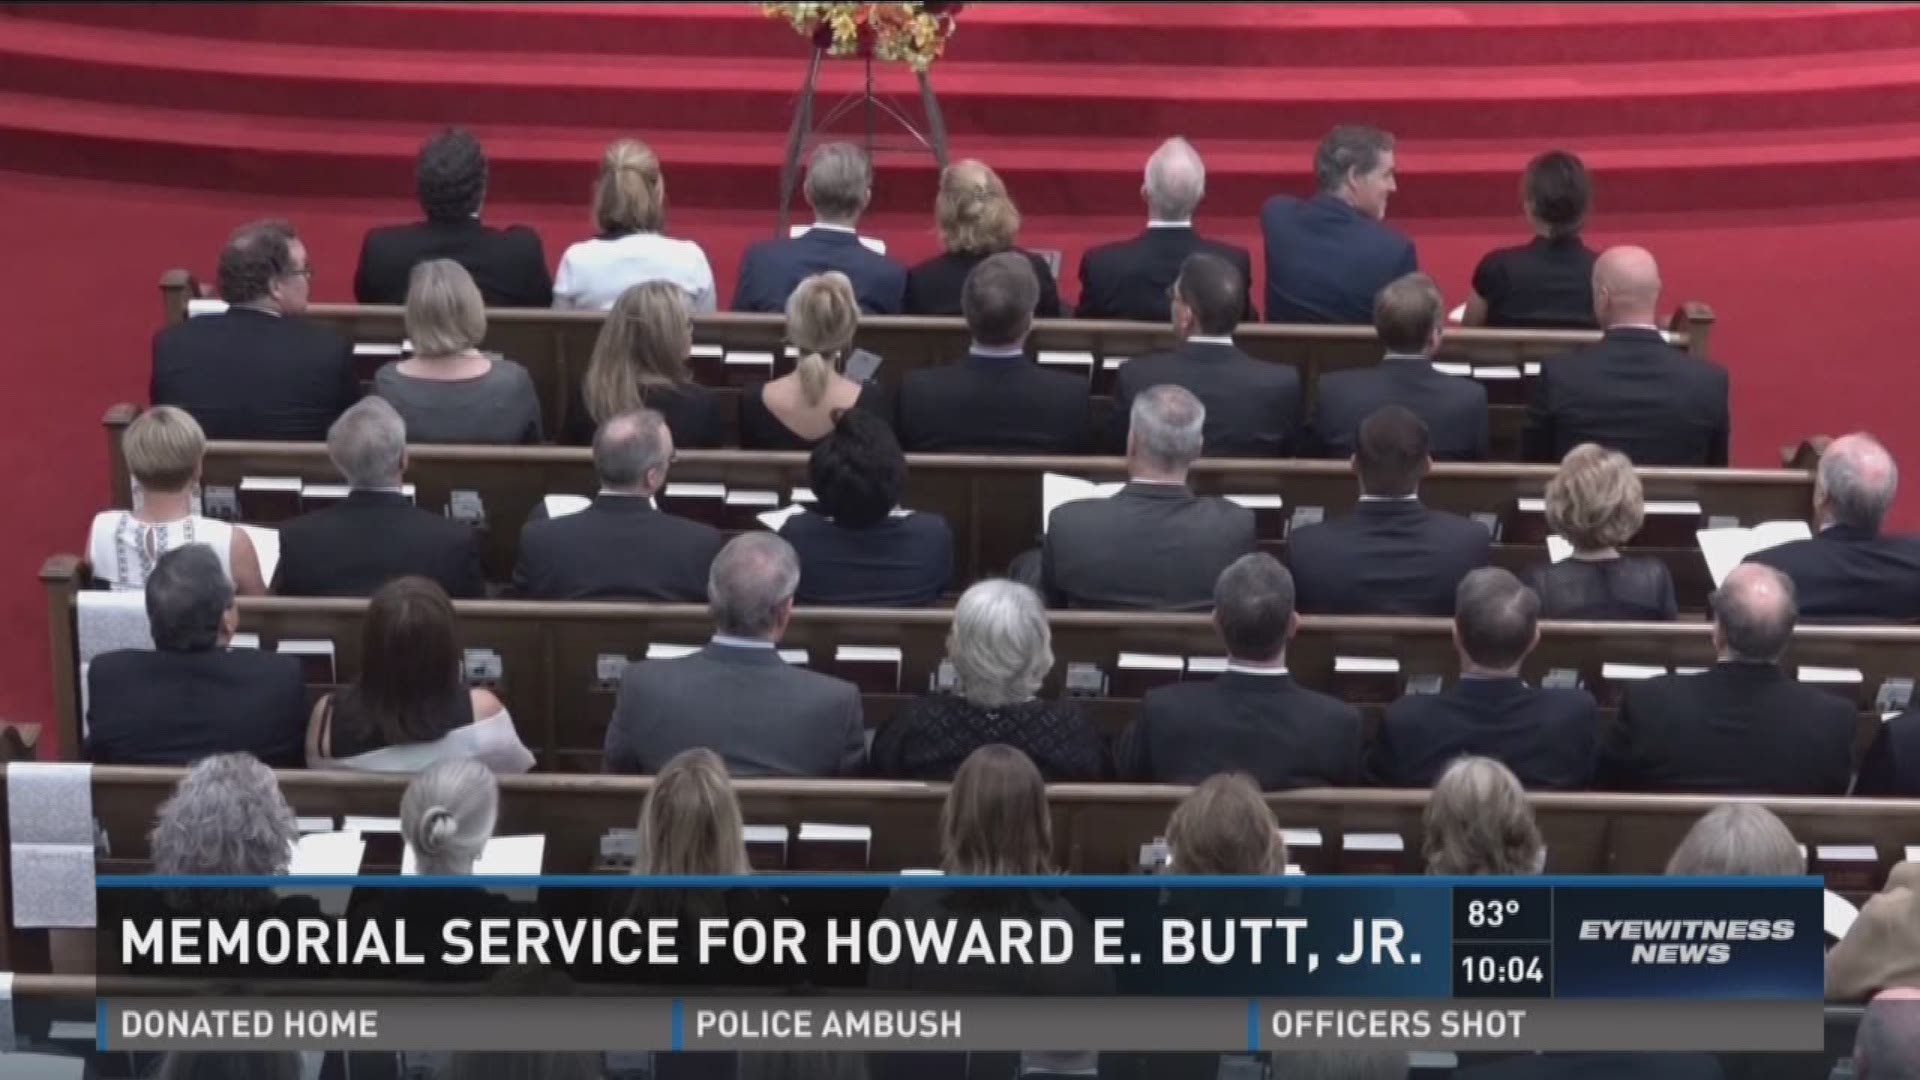 Memorial service for Howard E. Butt, Jr.